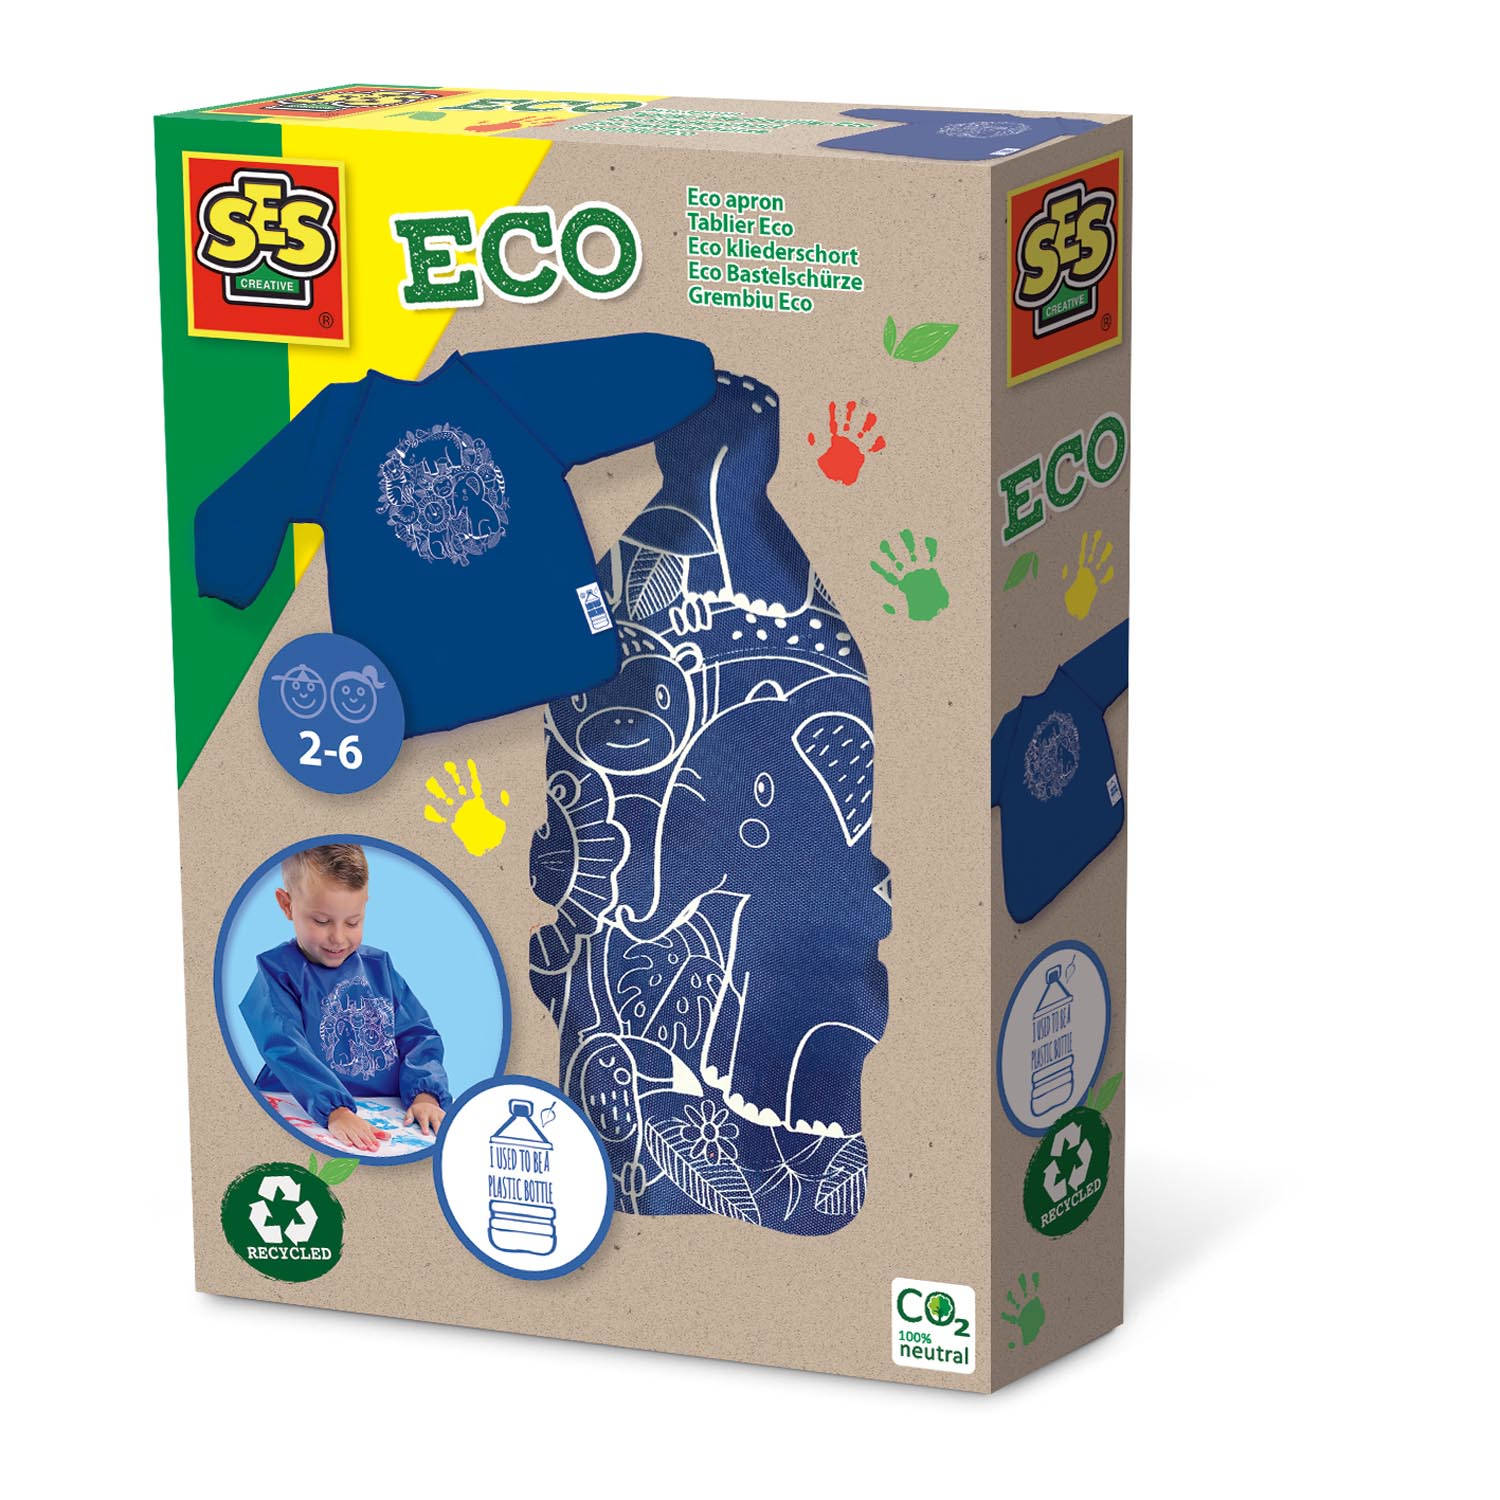 Eco kliederschort - 100% recycled